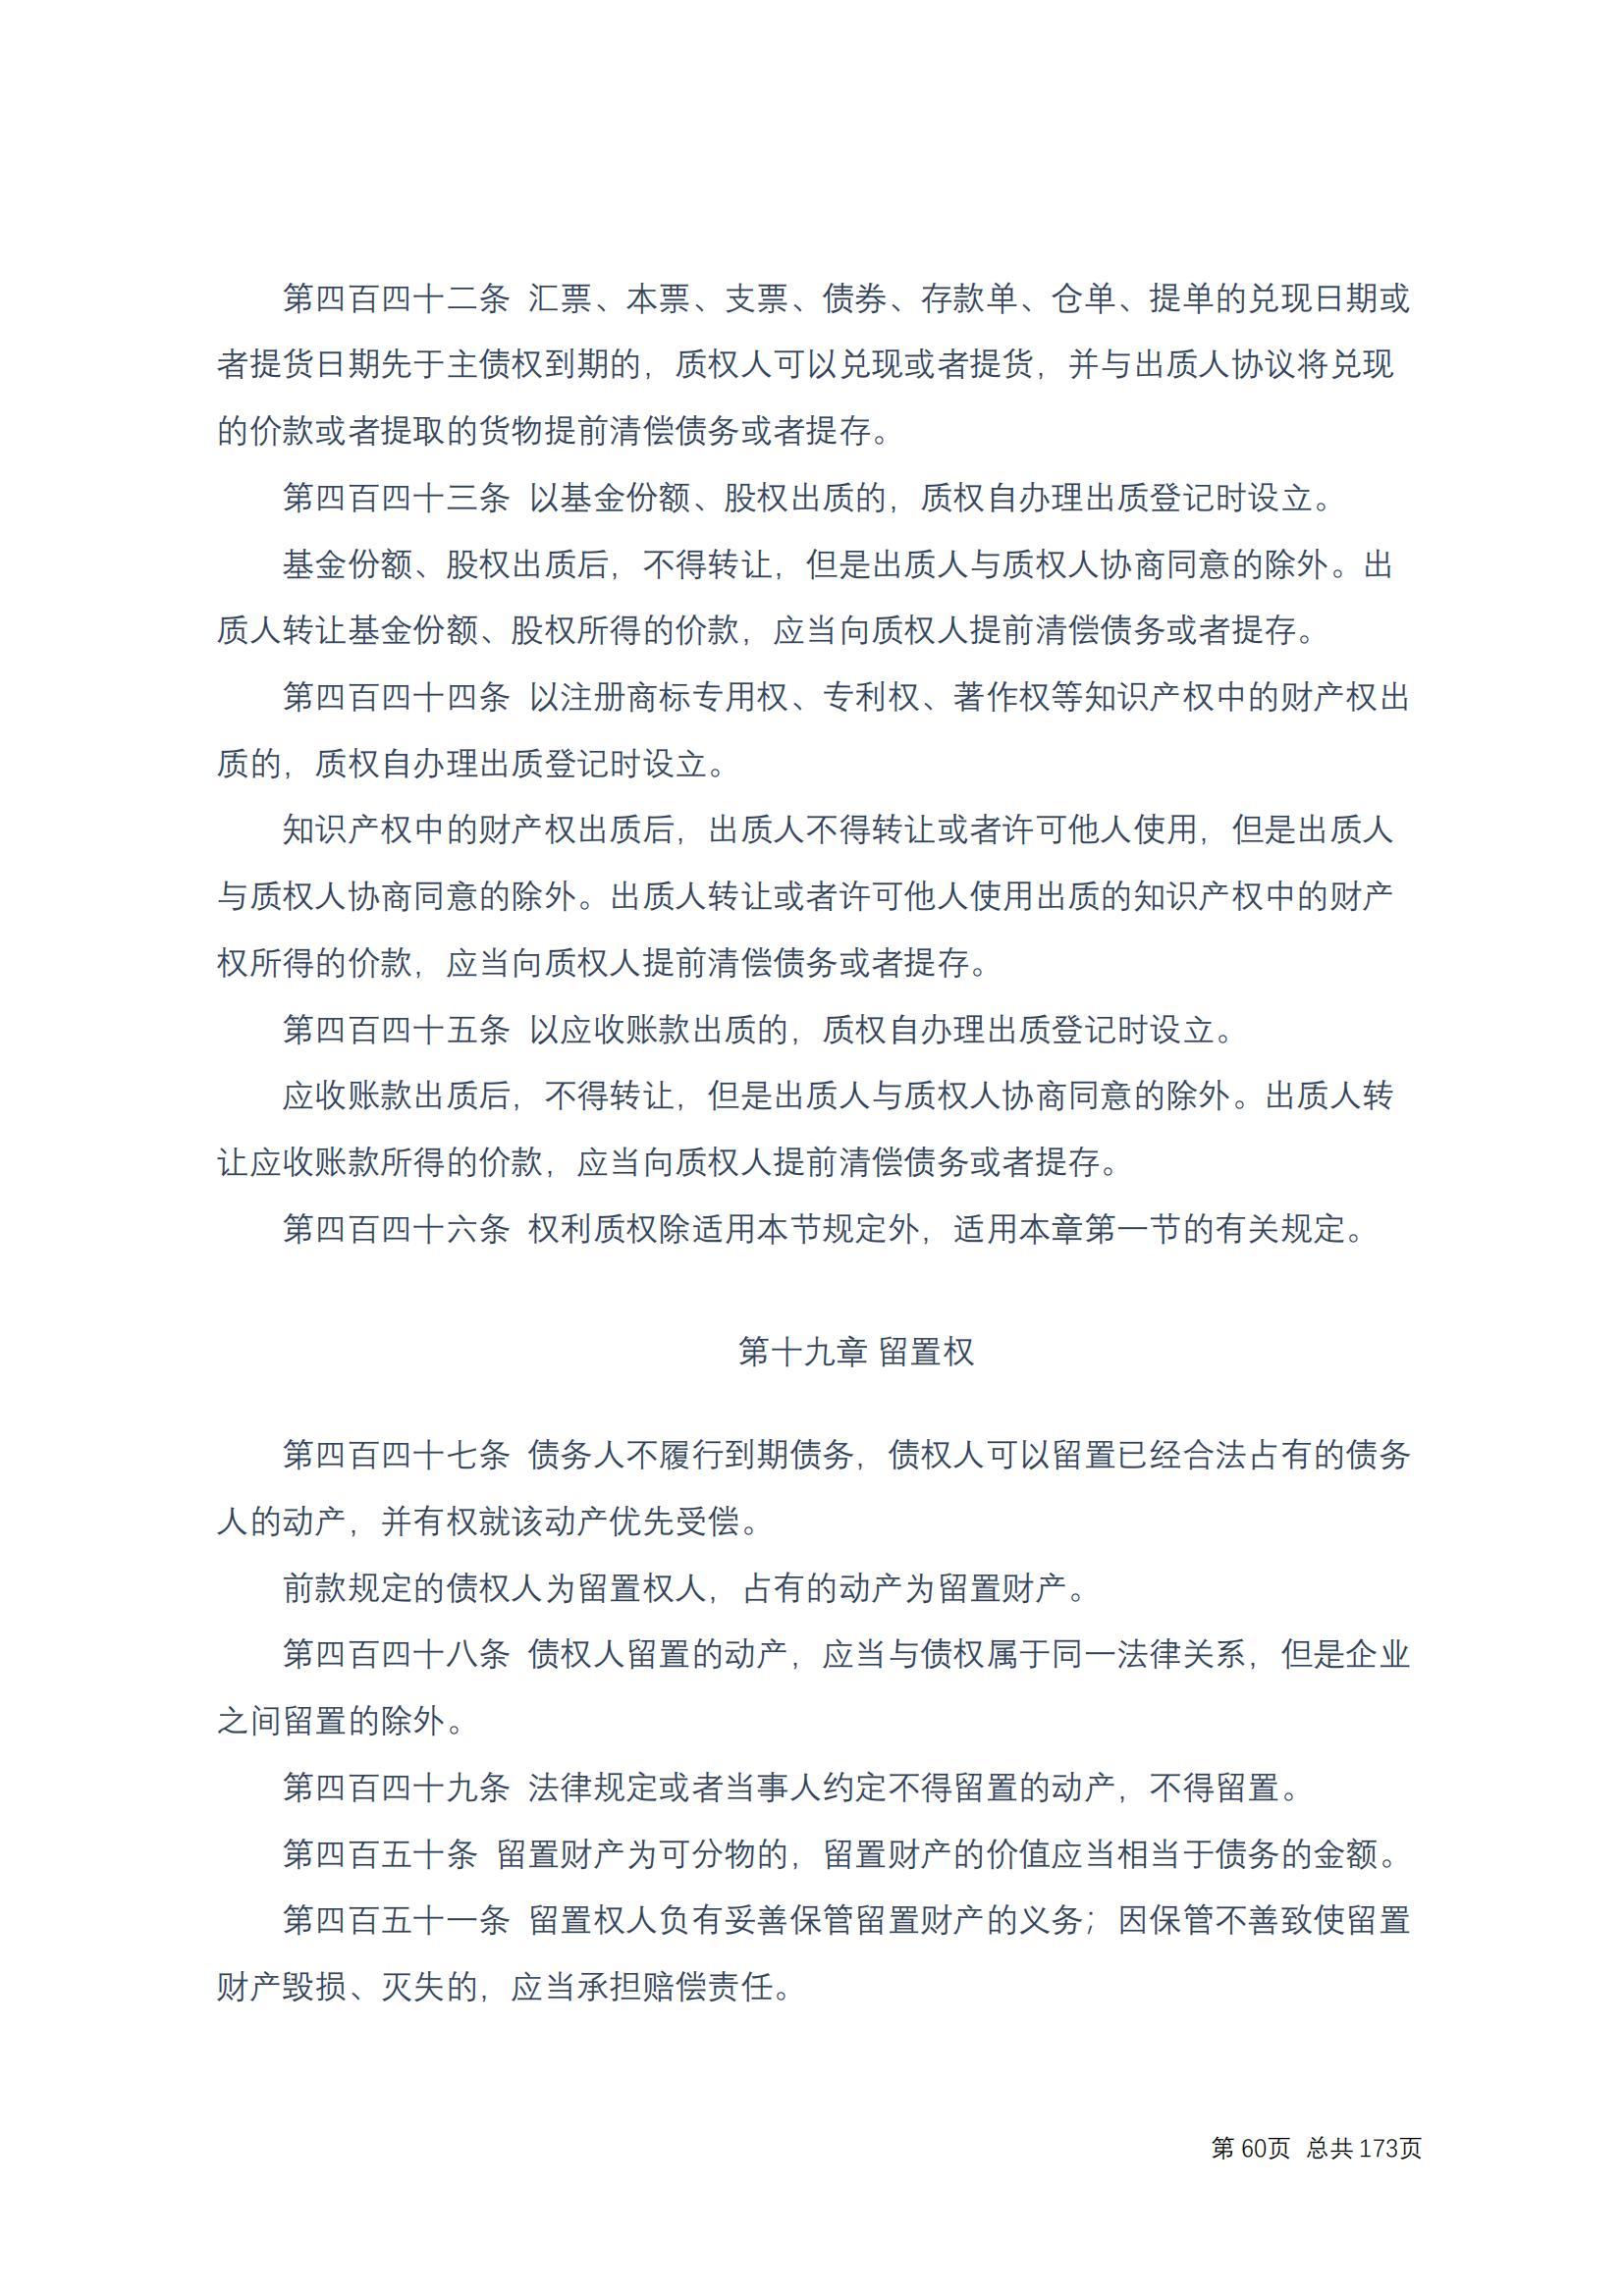 中华人民共和国民法典 修改过_59